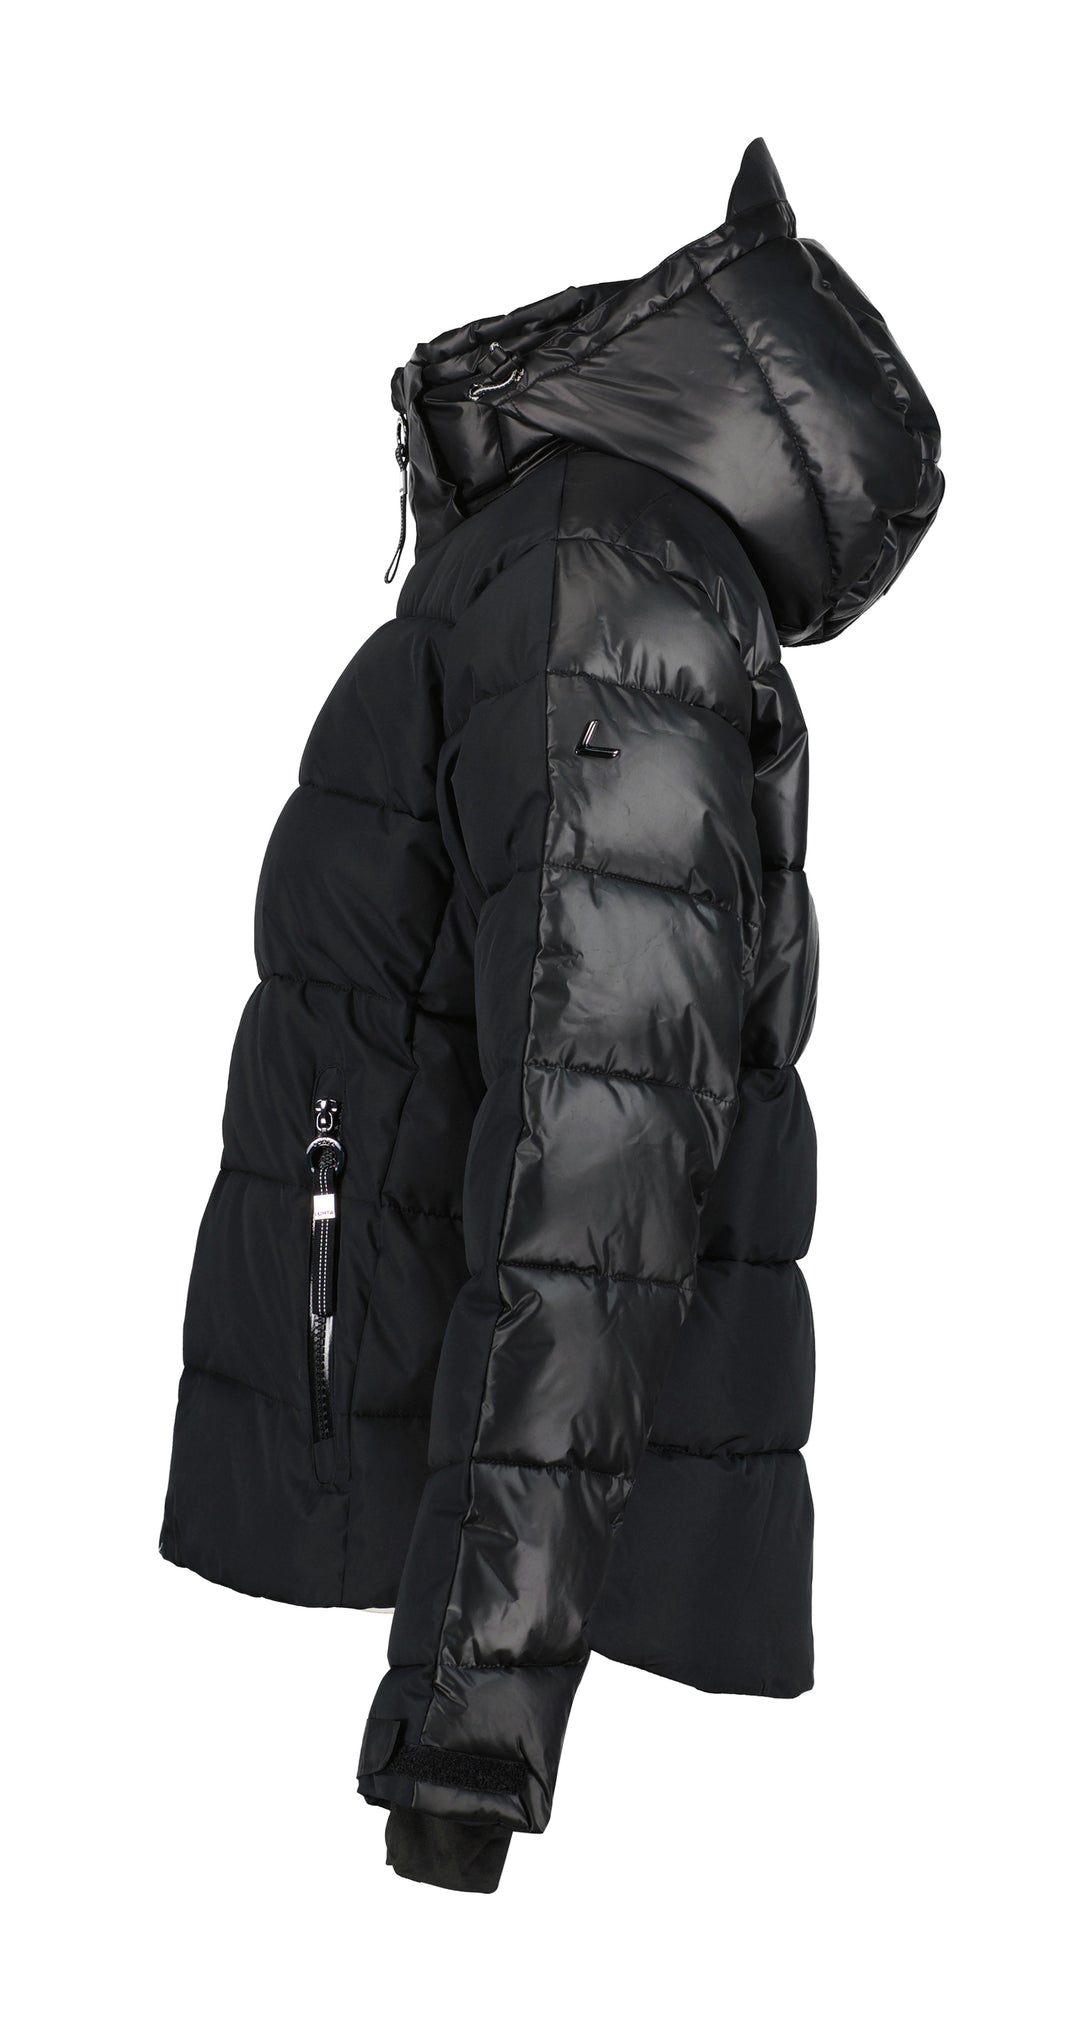 Luhta Karhutunturi Women's Ski Jacket